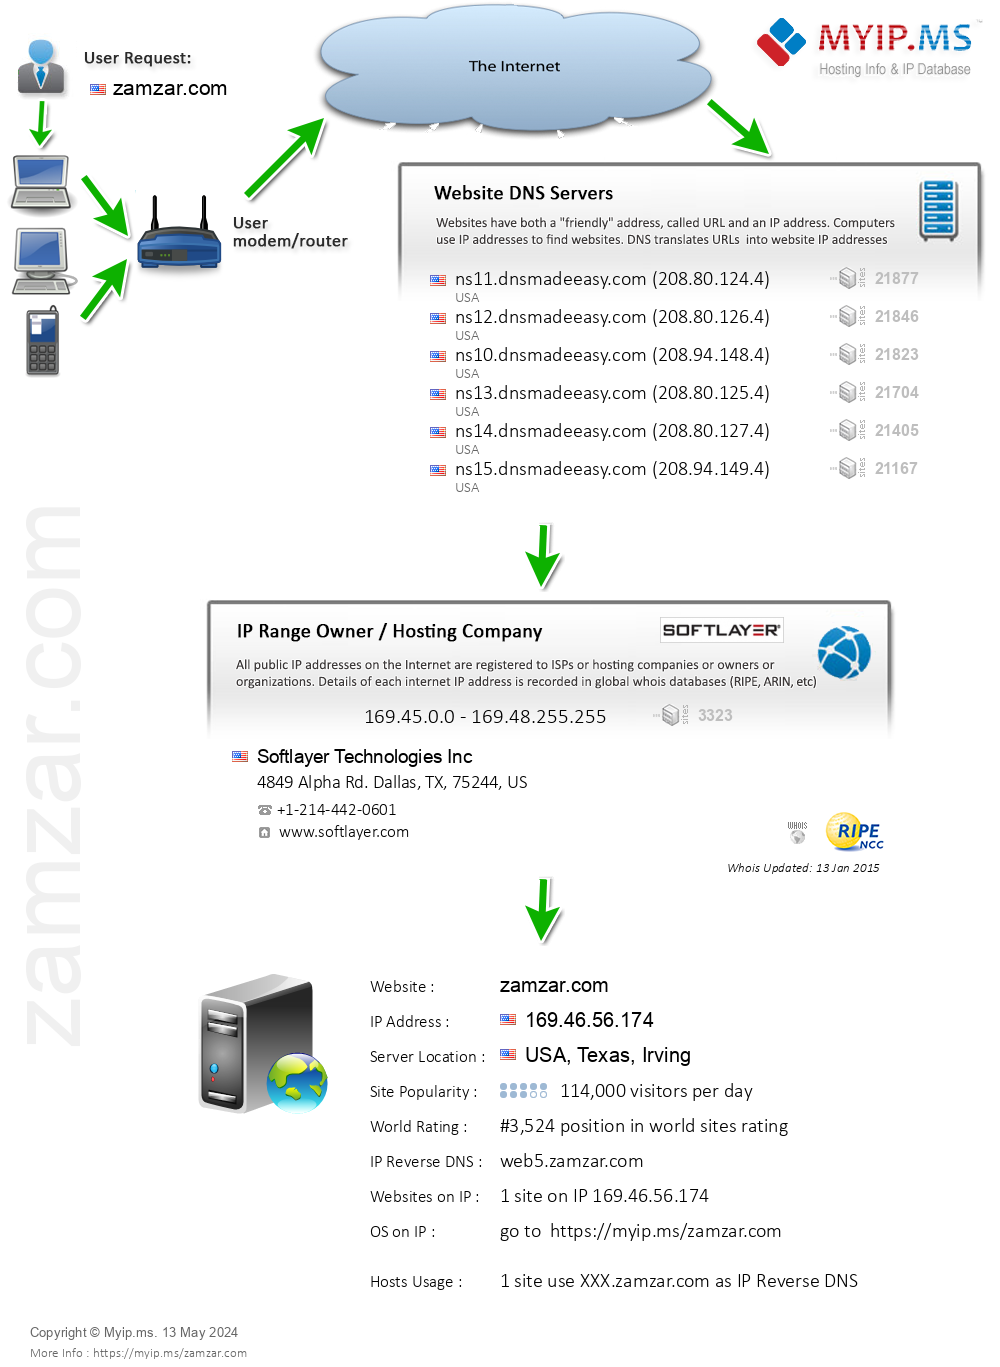 Zamzar.com - Website Hosting Visual IP Diagram